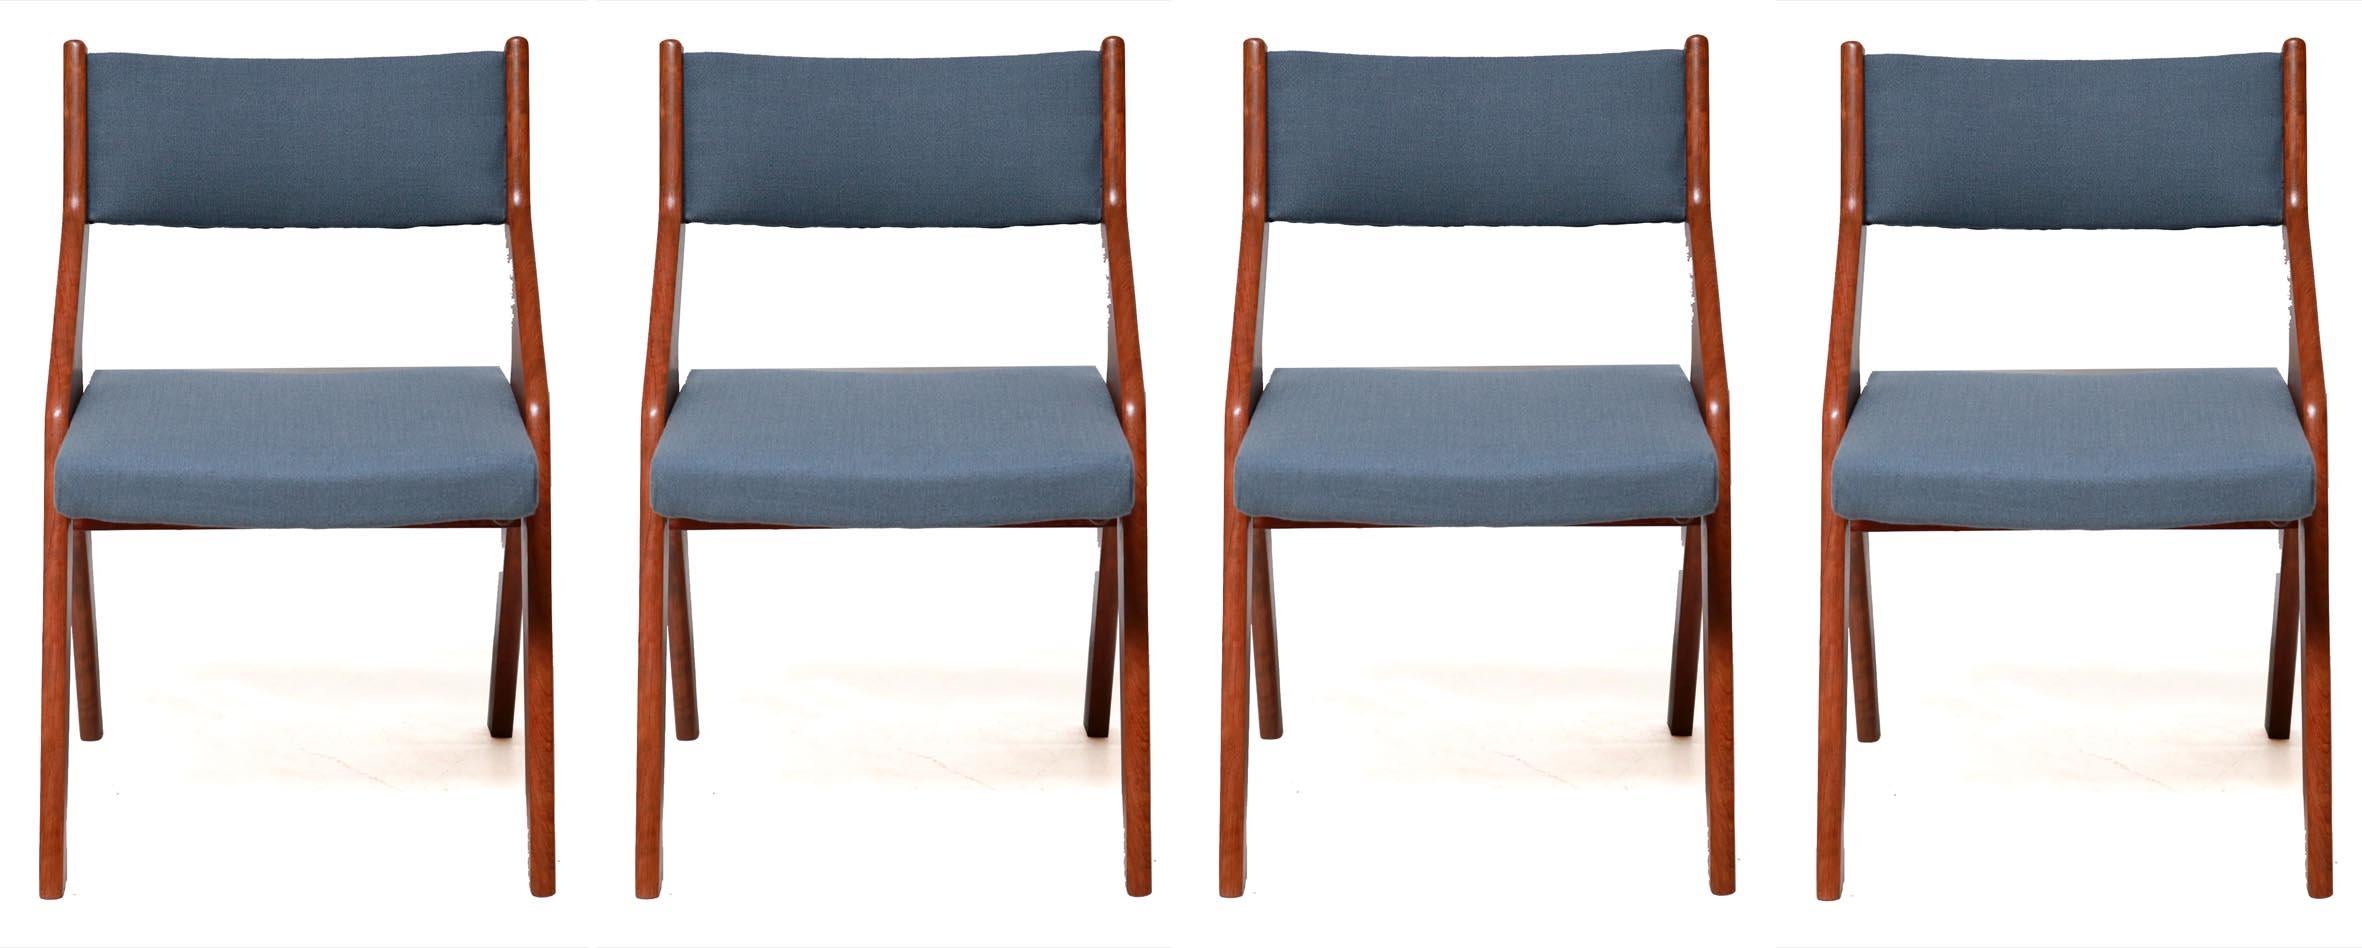 Danish Vintage Scandinavian Teak Wooden Dining Chairs, 1960s